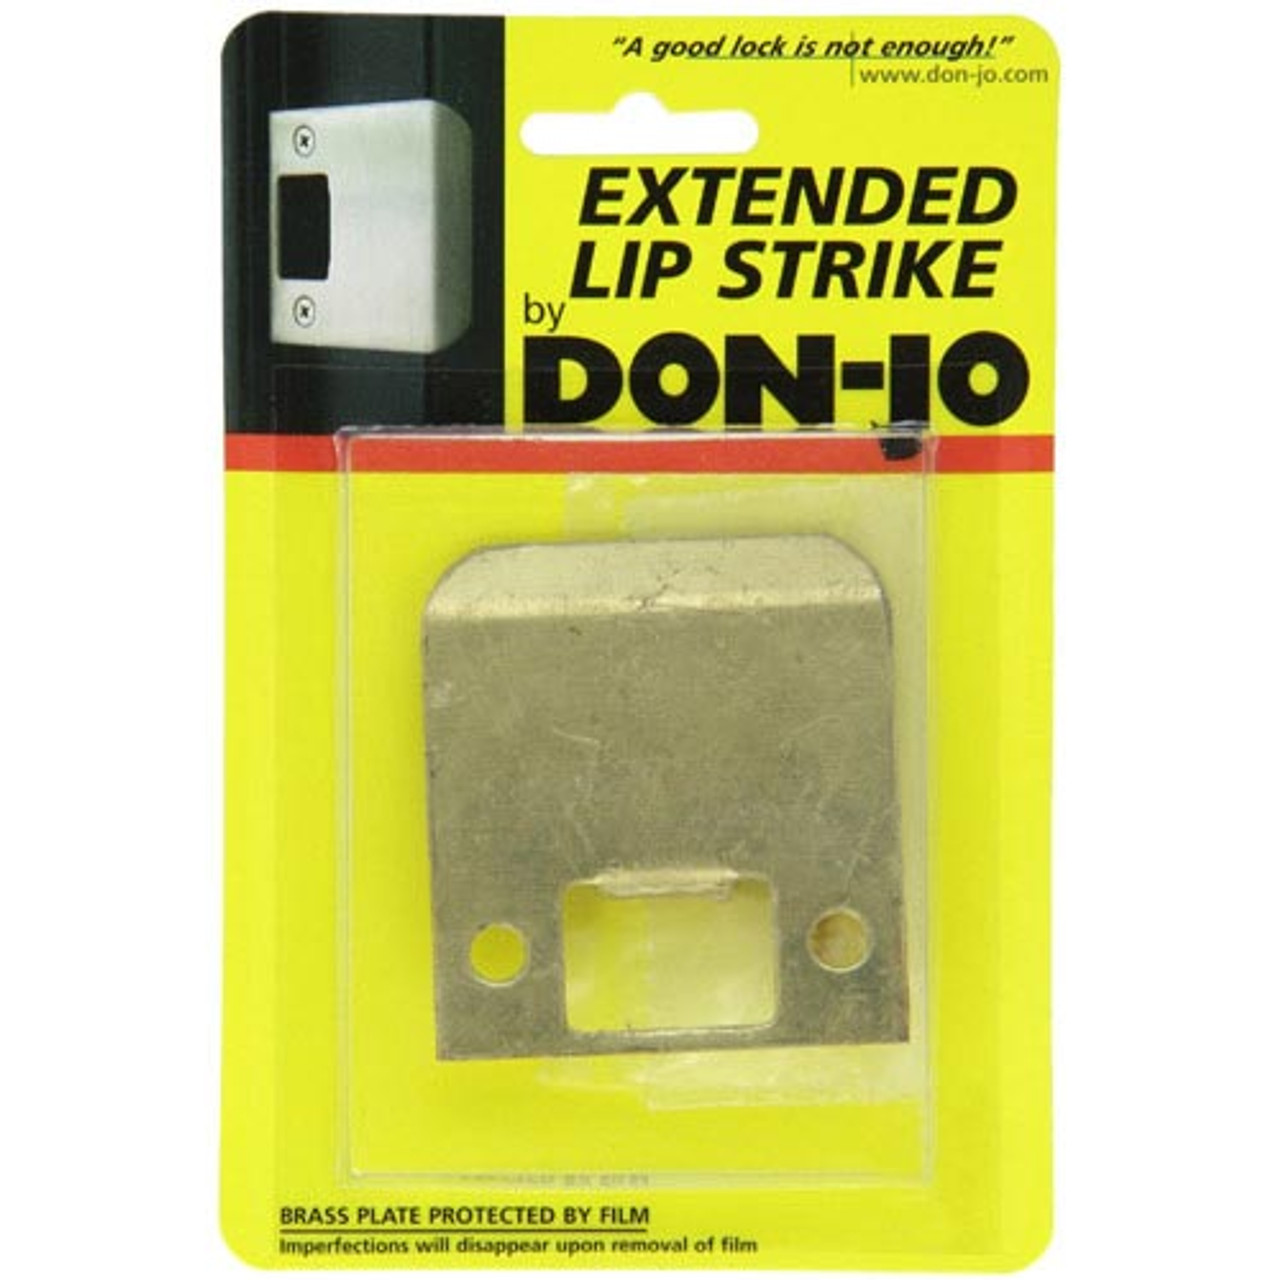 9102-630 Don Jo 2-1/4" Extended Lip Strike in Satin Stainless Steel Finish